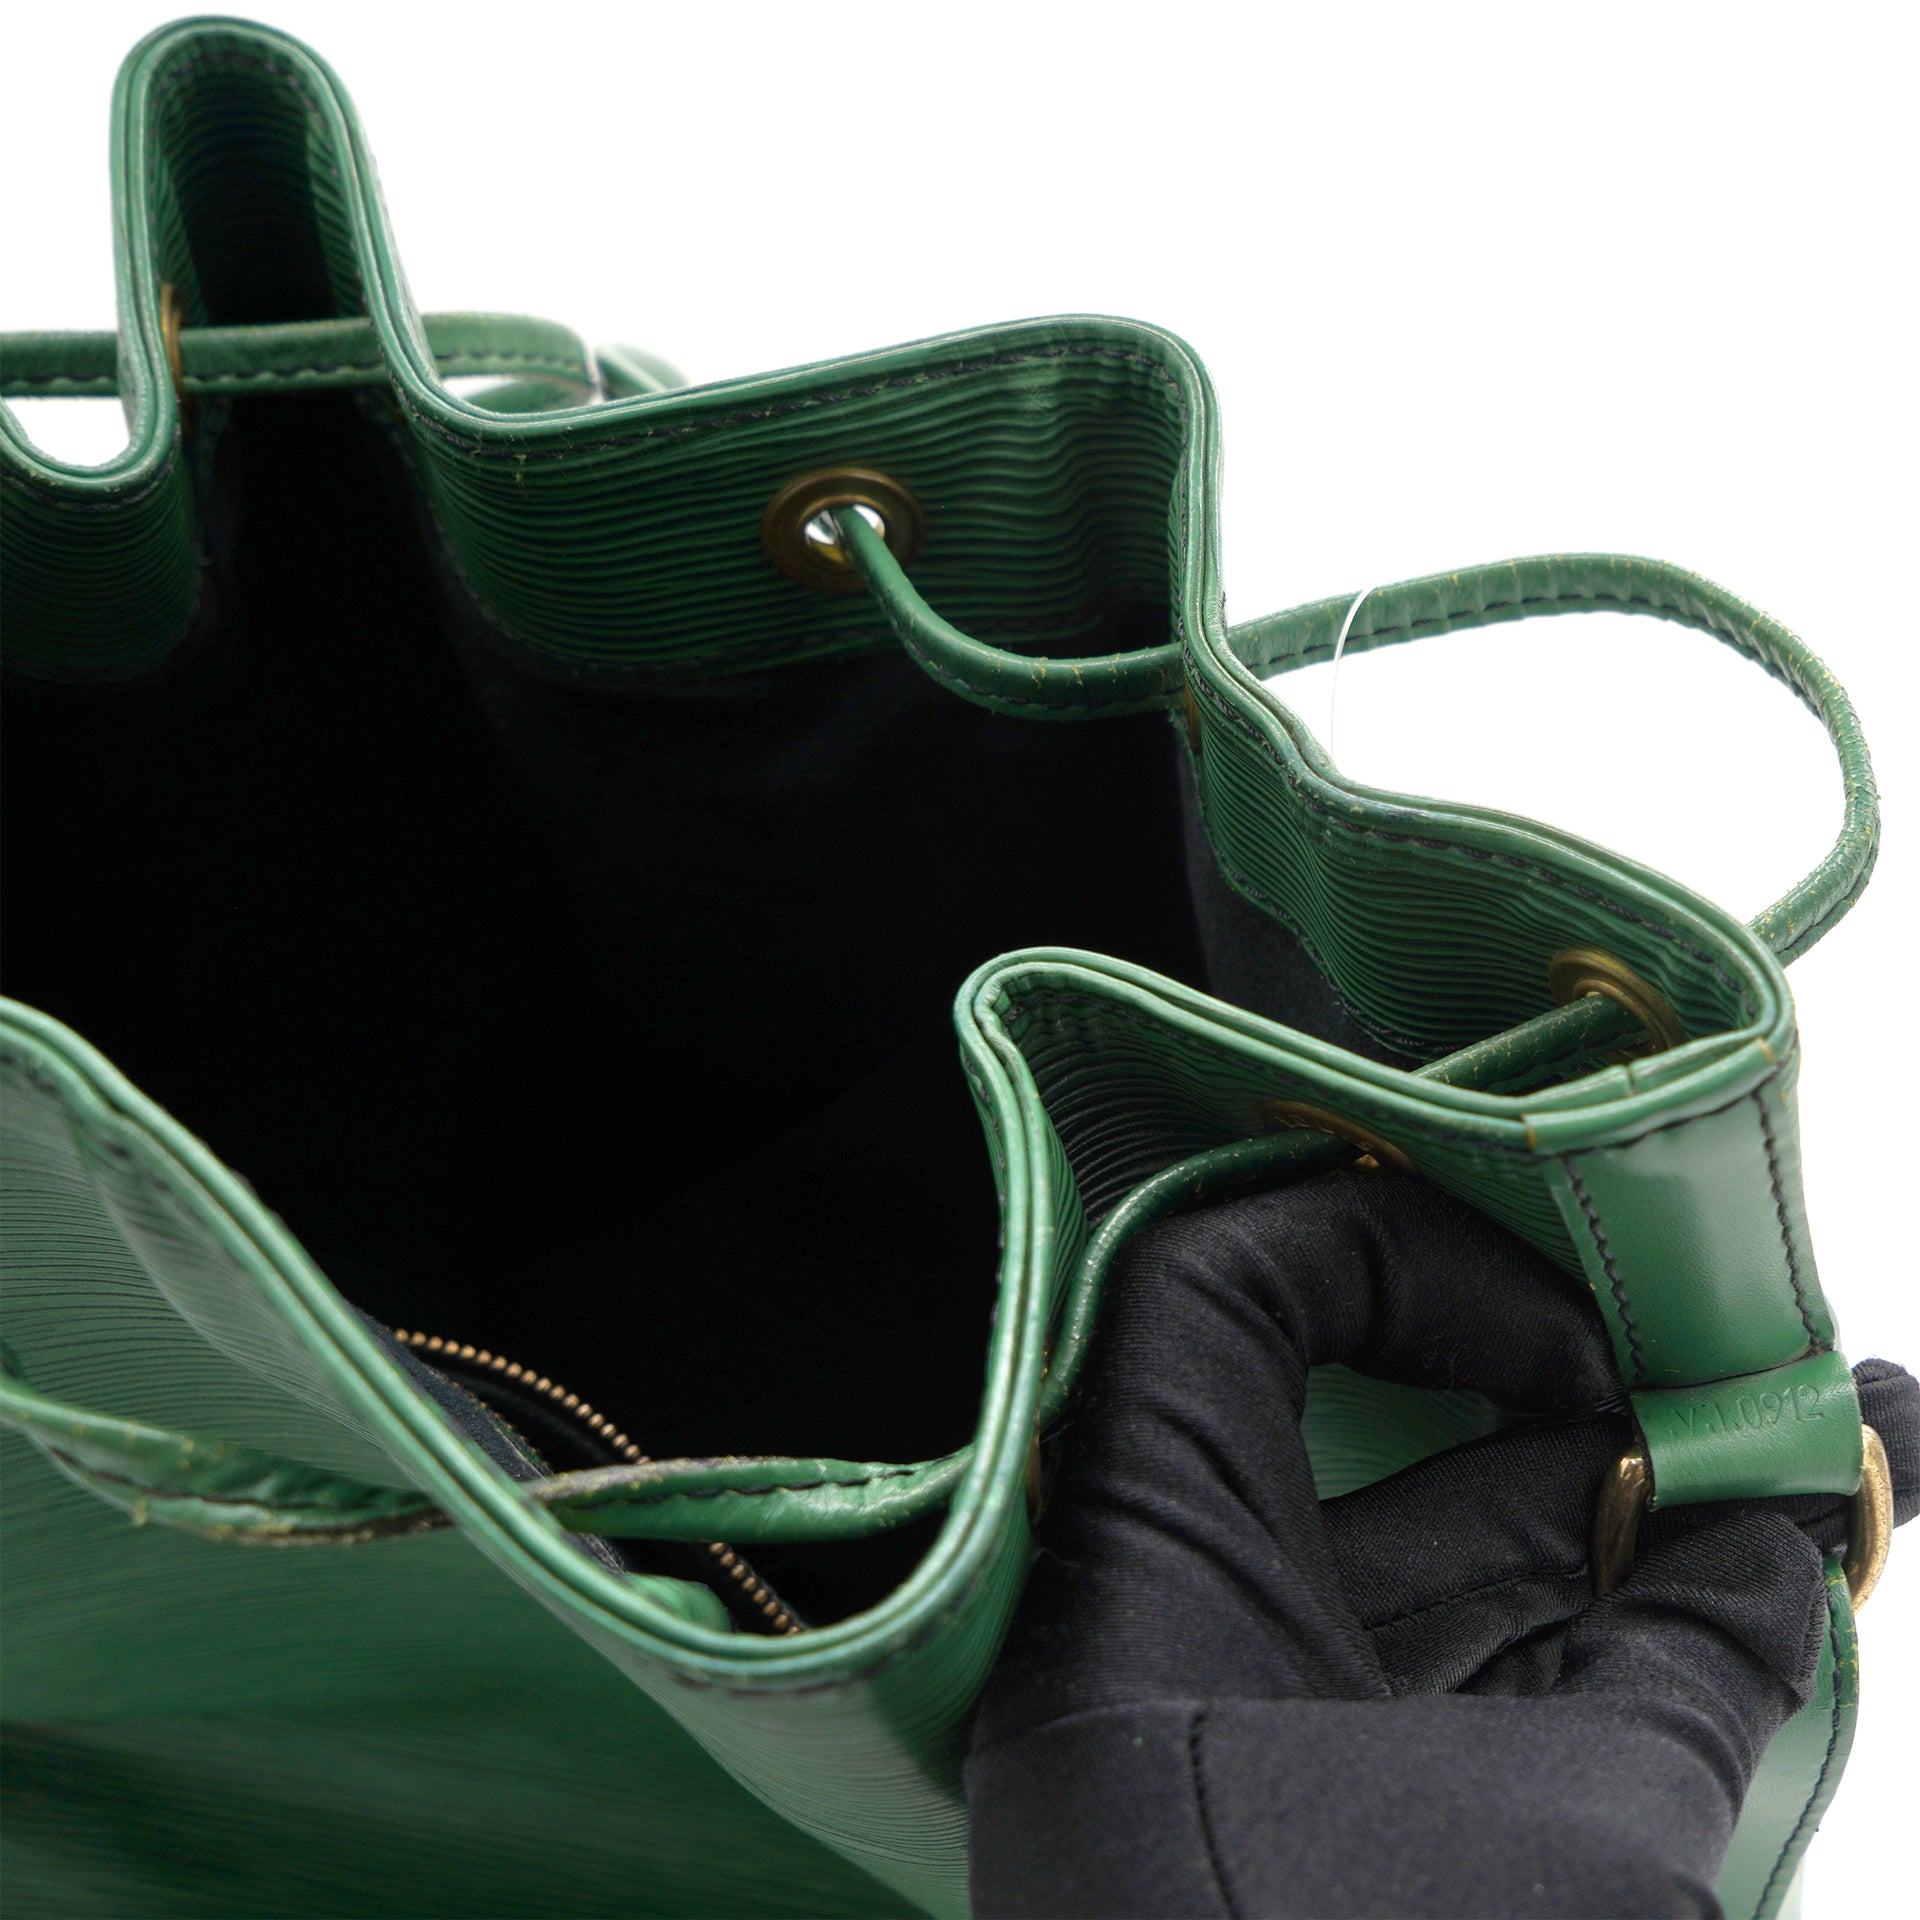 Louis-Vuitton-Epi-Saint-Cloud-Shoulder-Bag-Borneo-Green-M52194